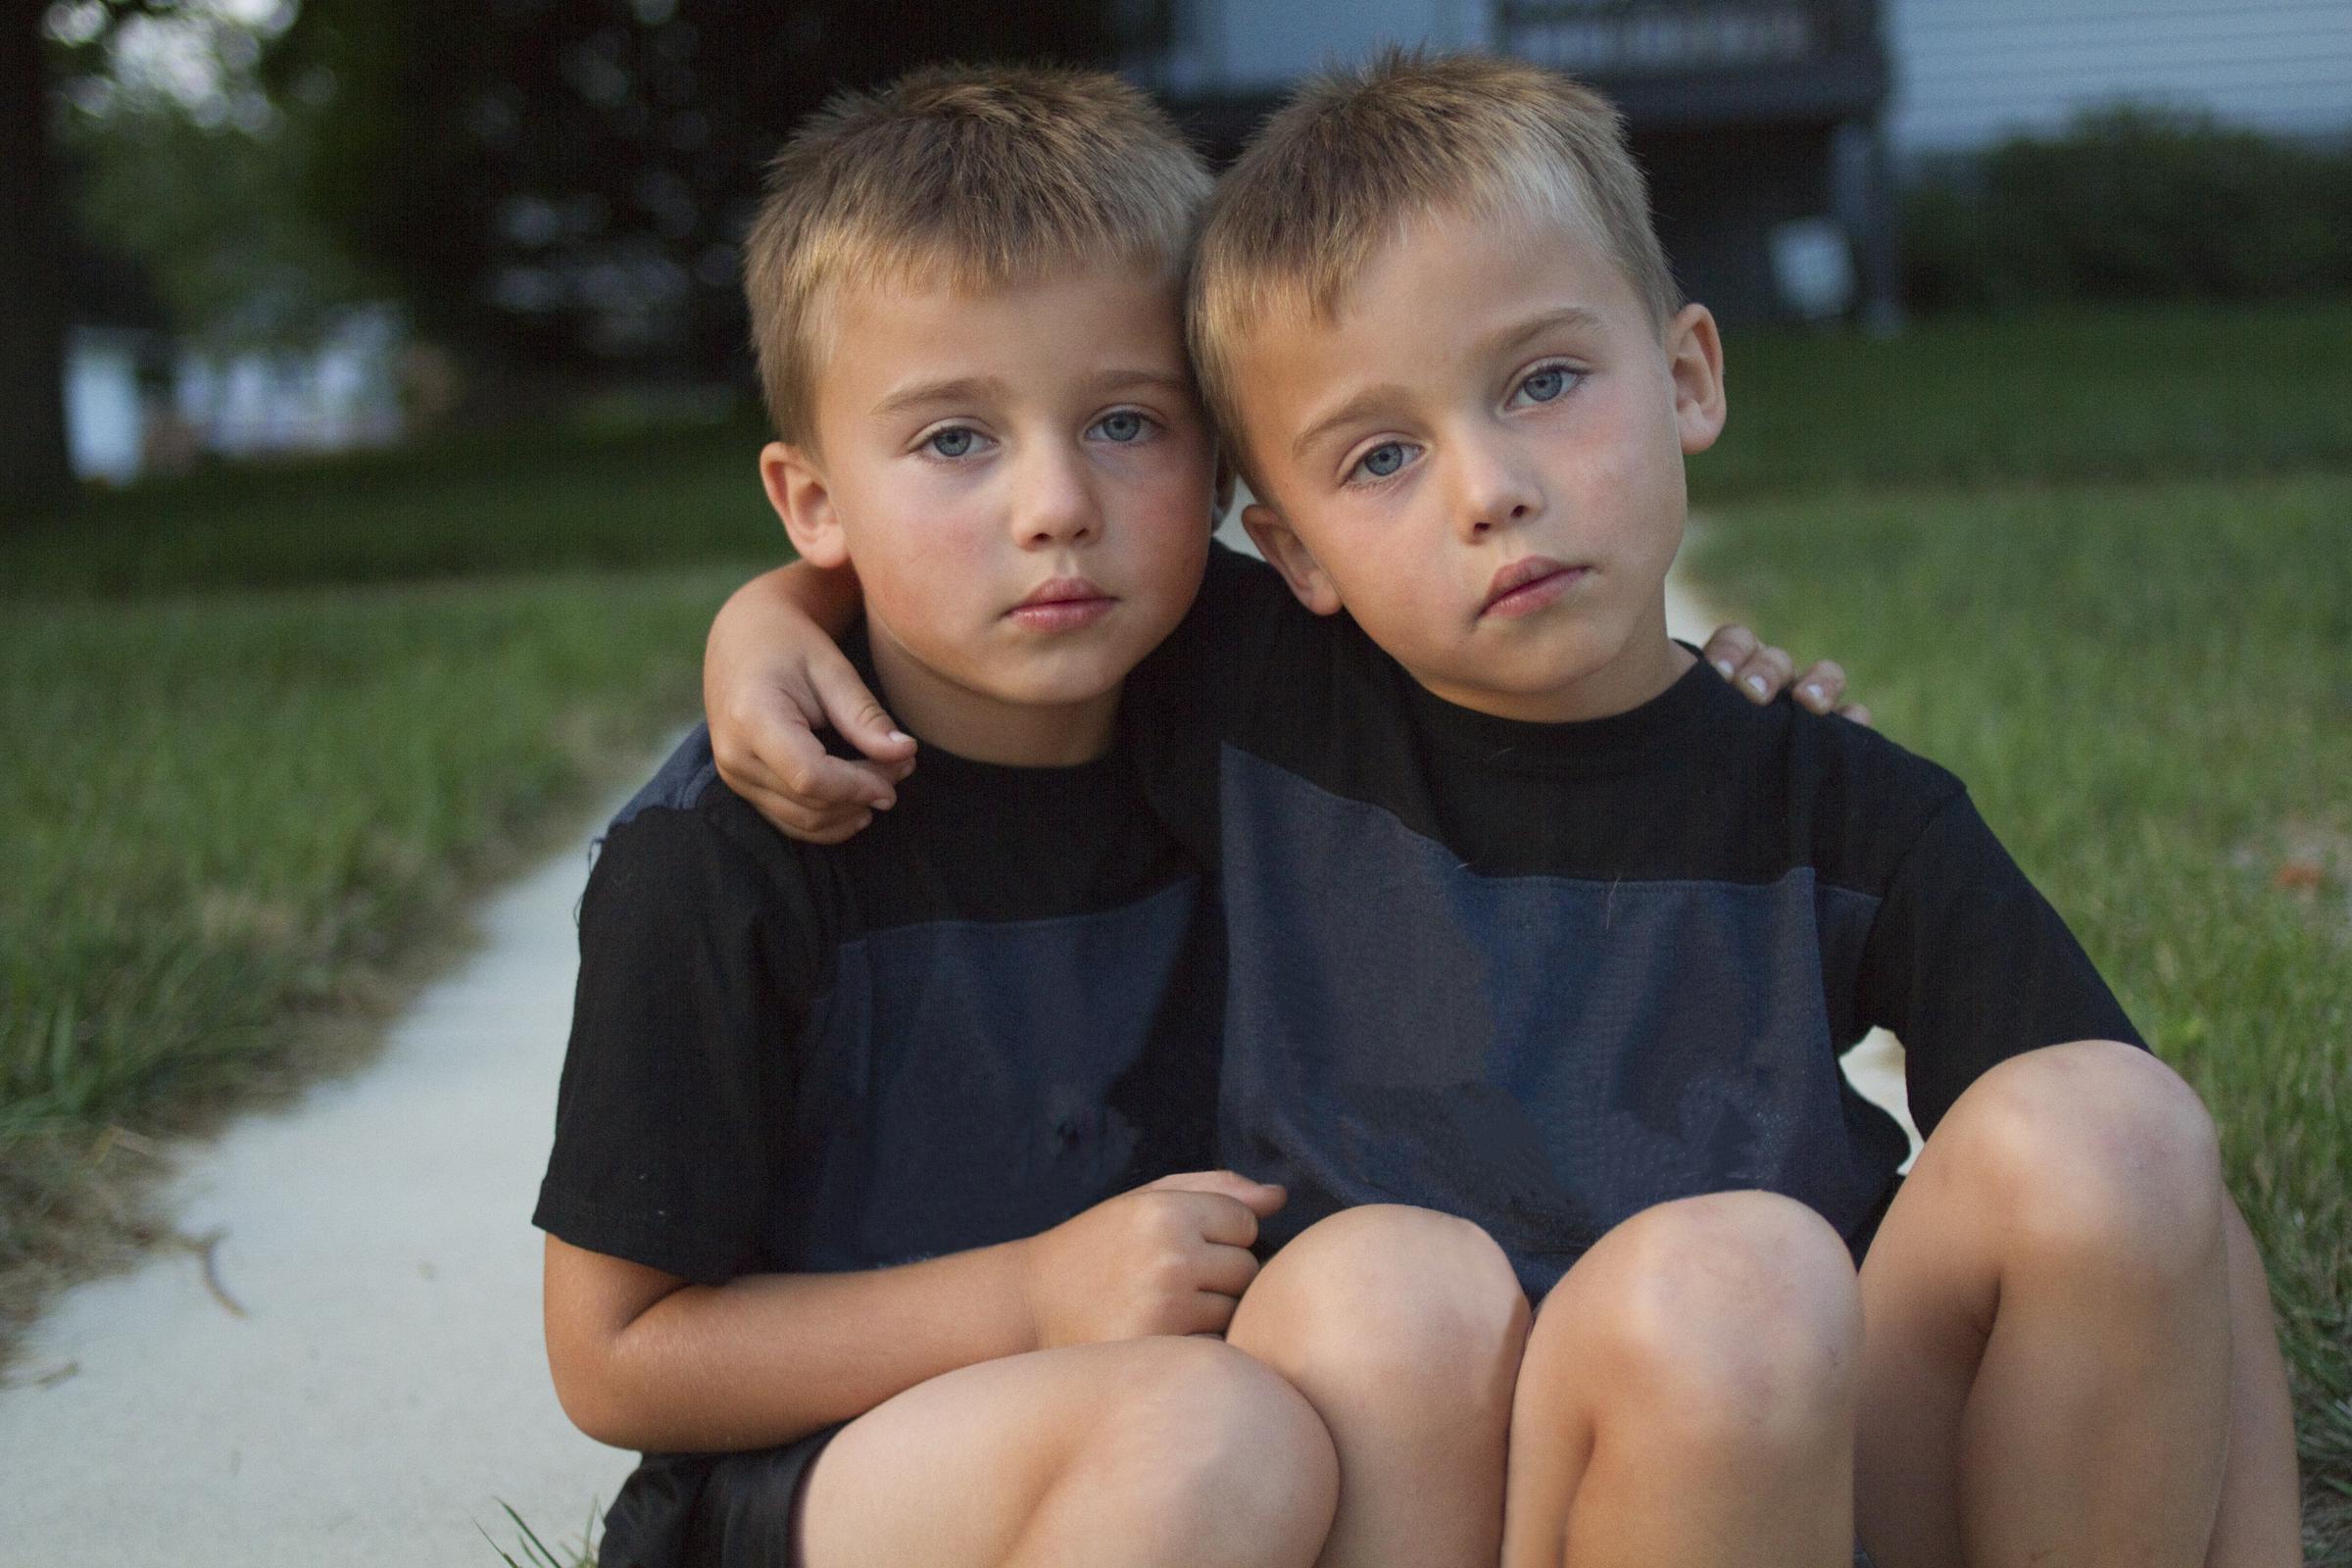 Dos chicos de aspecto idéntico | Fuente: GettyImages